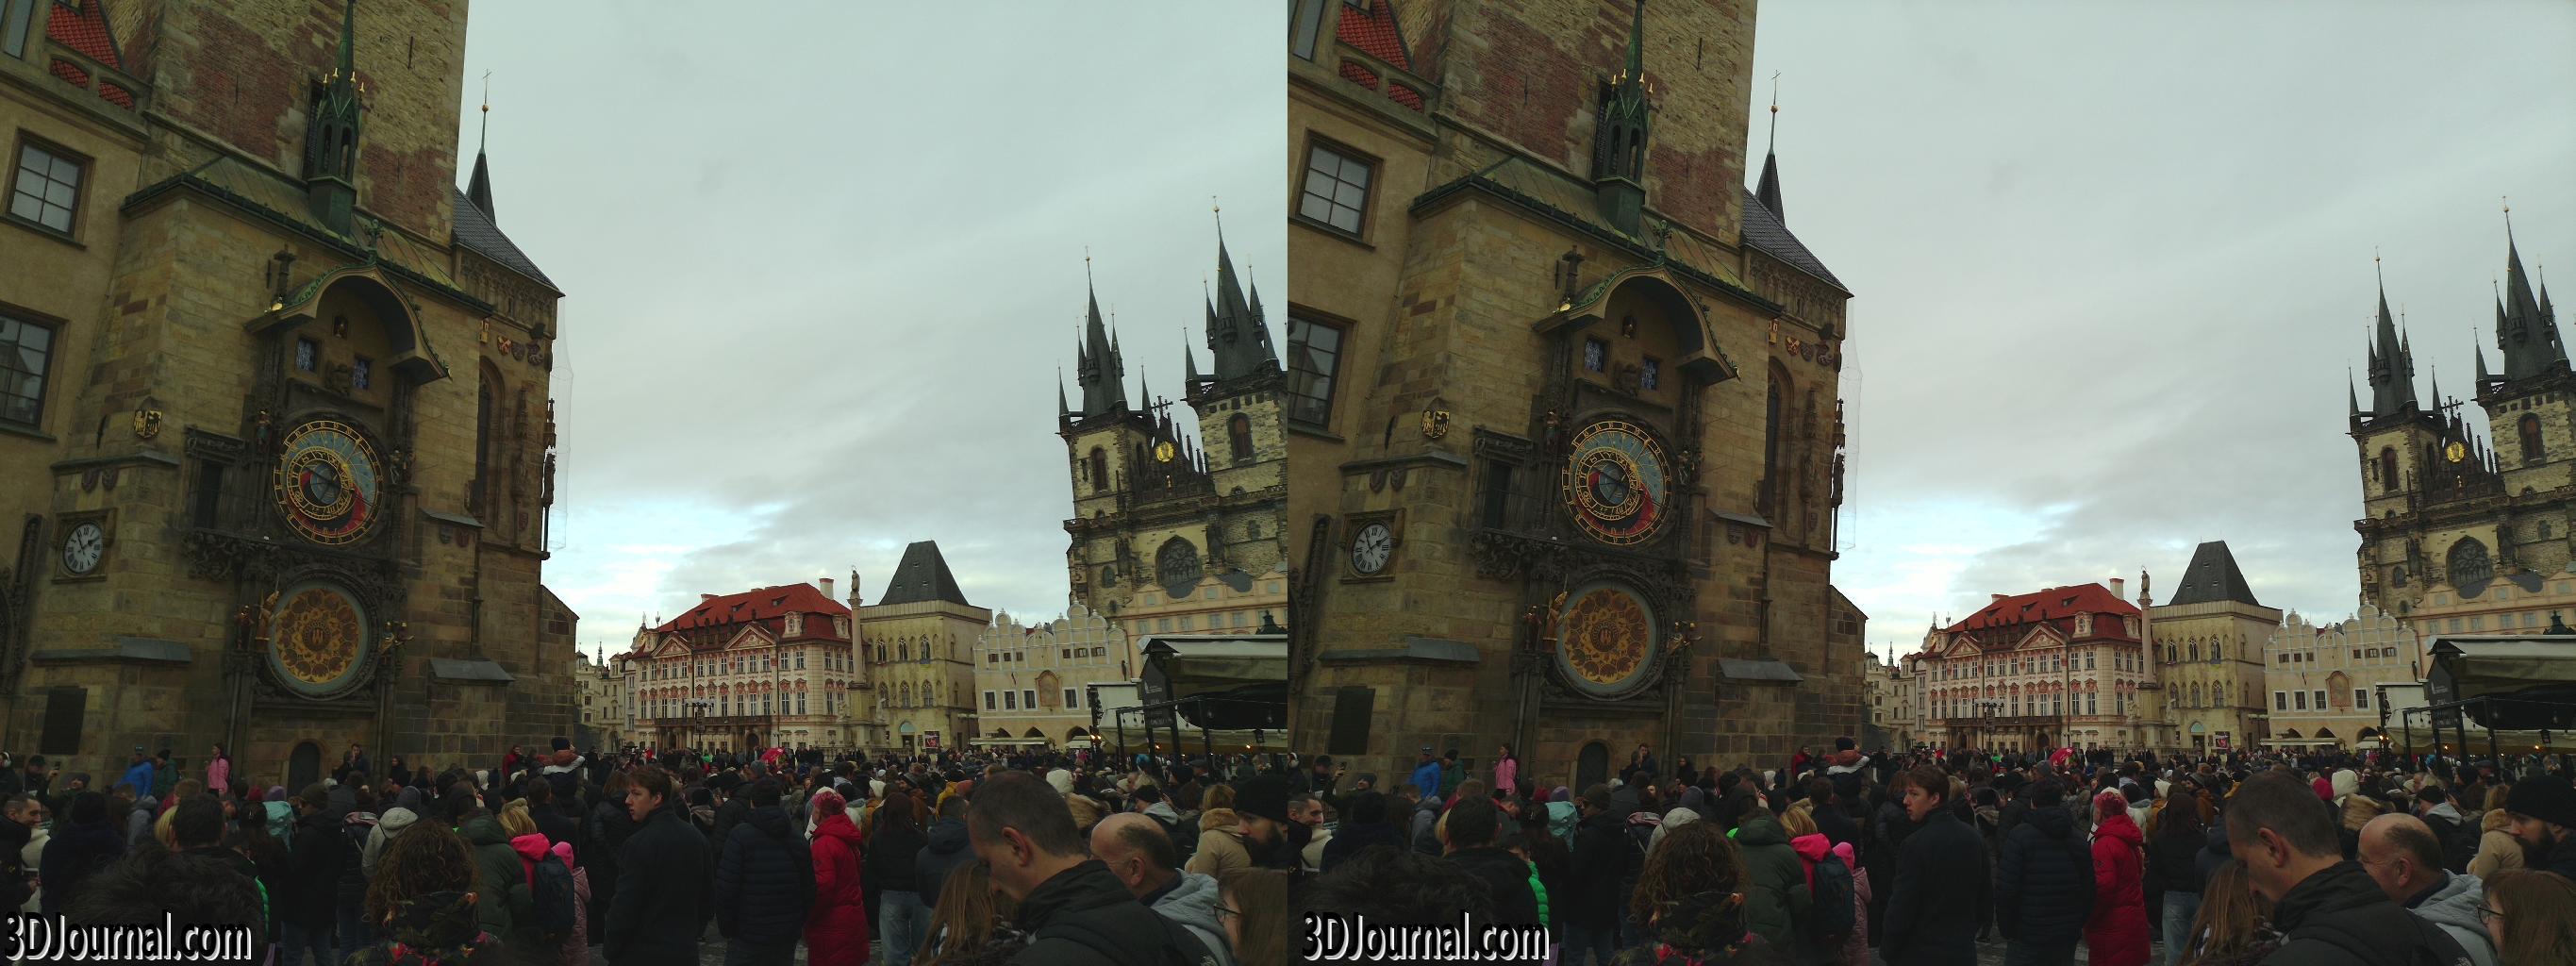 Staroměstské náměstí v Praze - u orloje